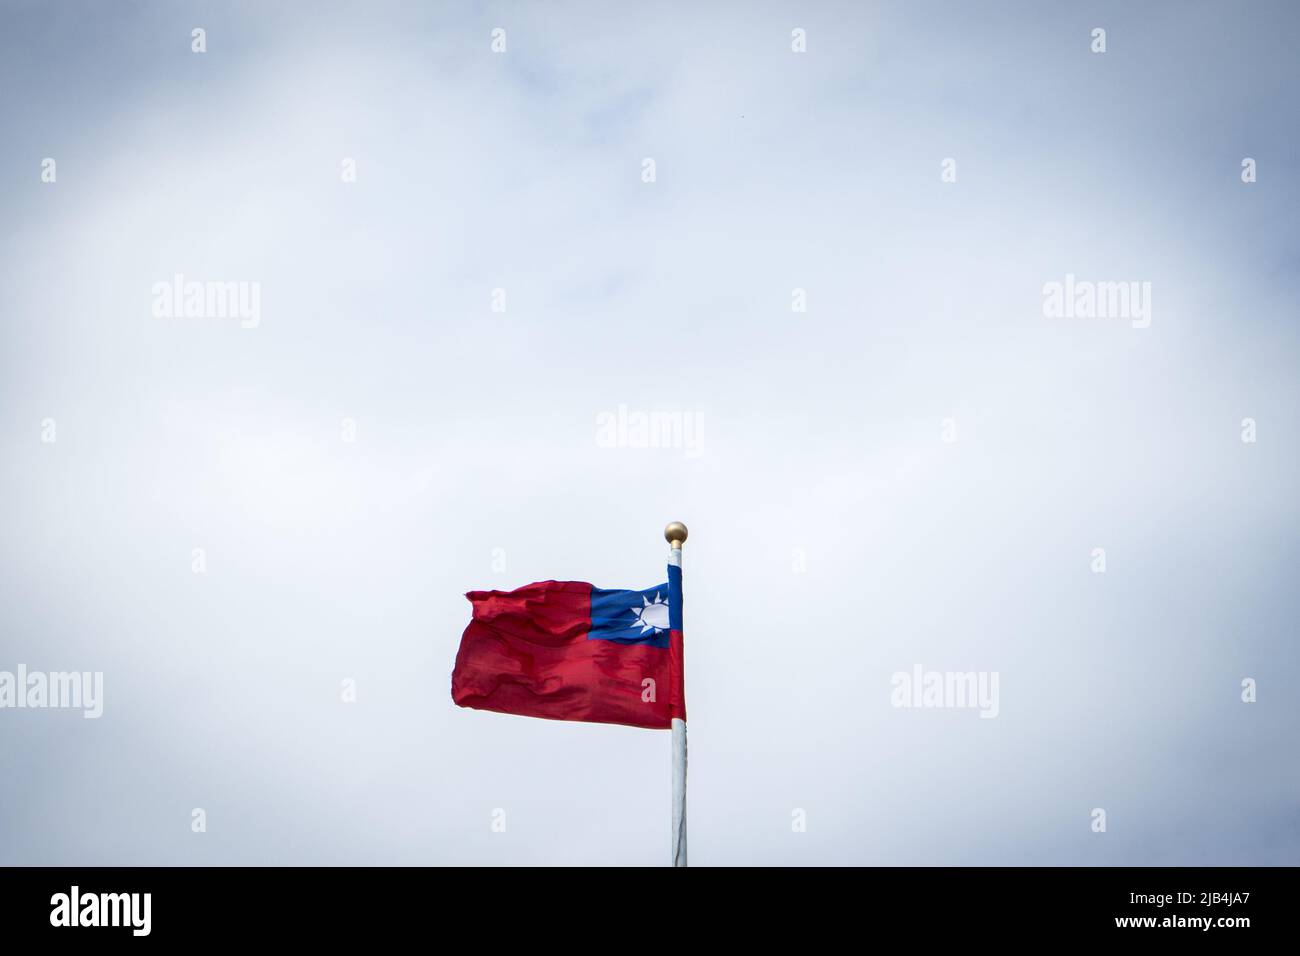 Impiccato bandiera taiwanese nel cielo Foto Stock